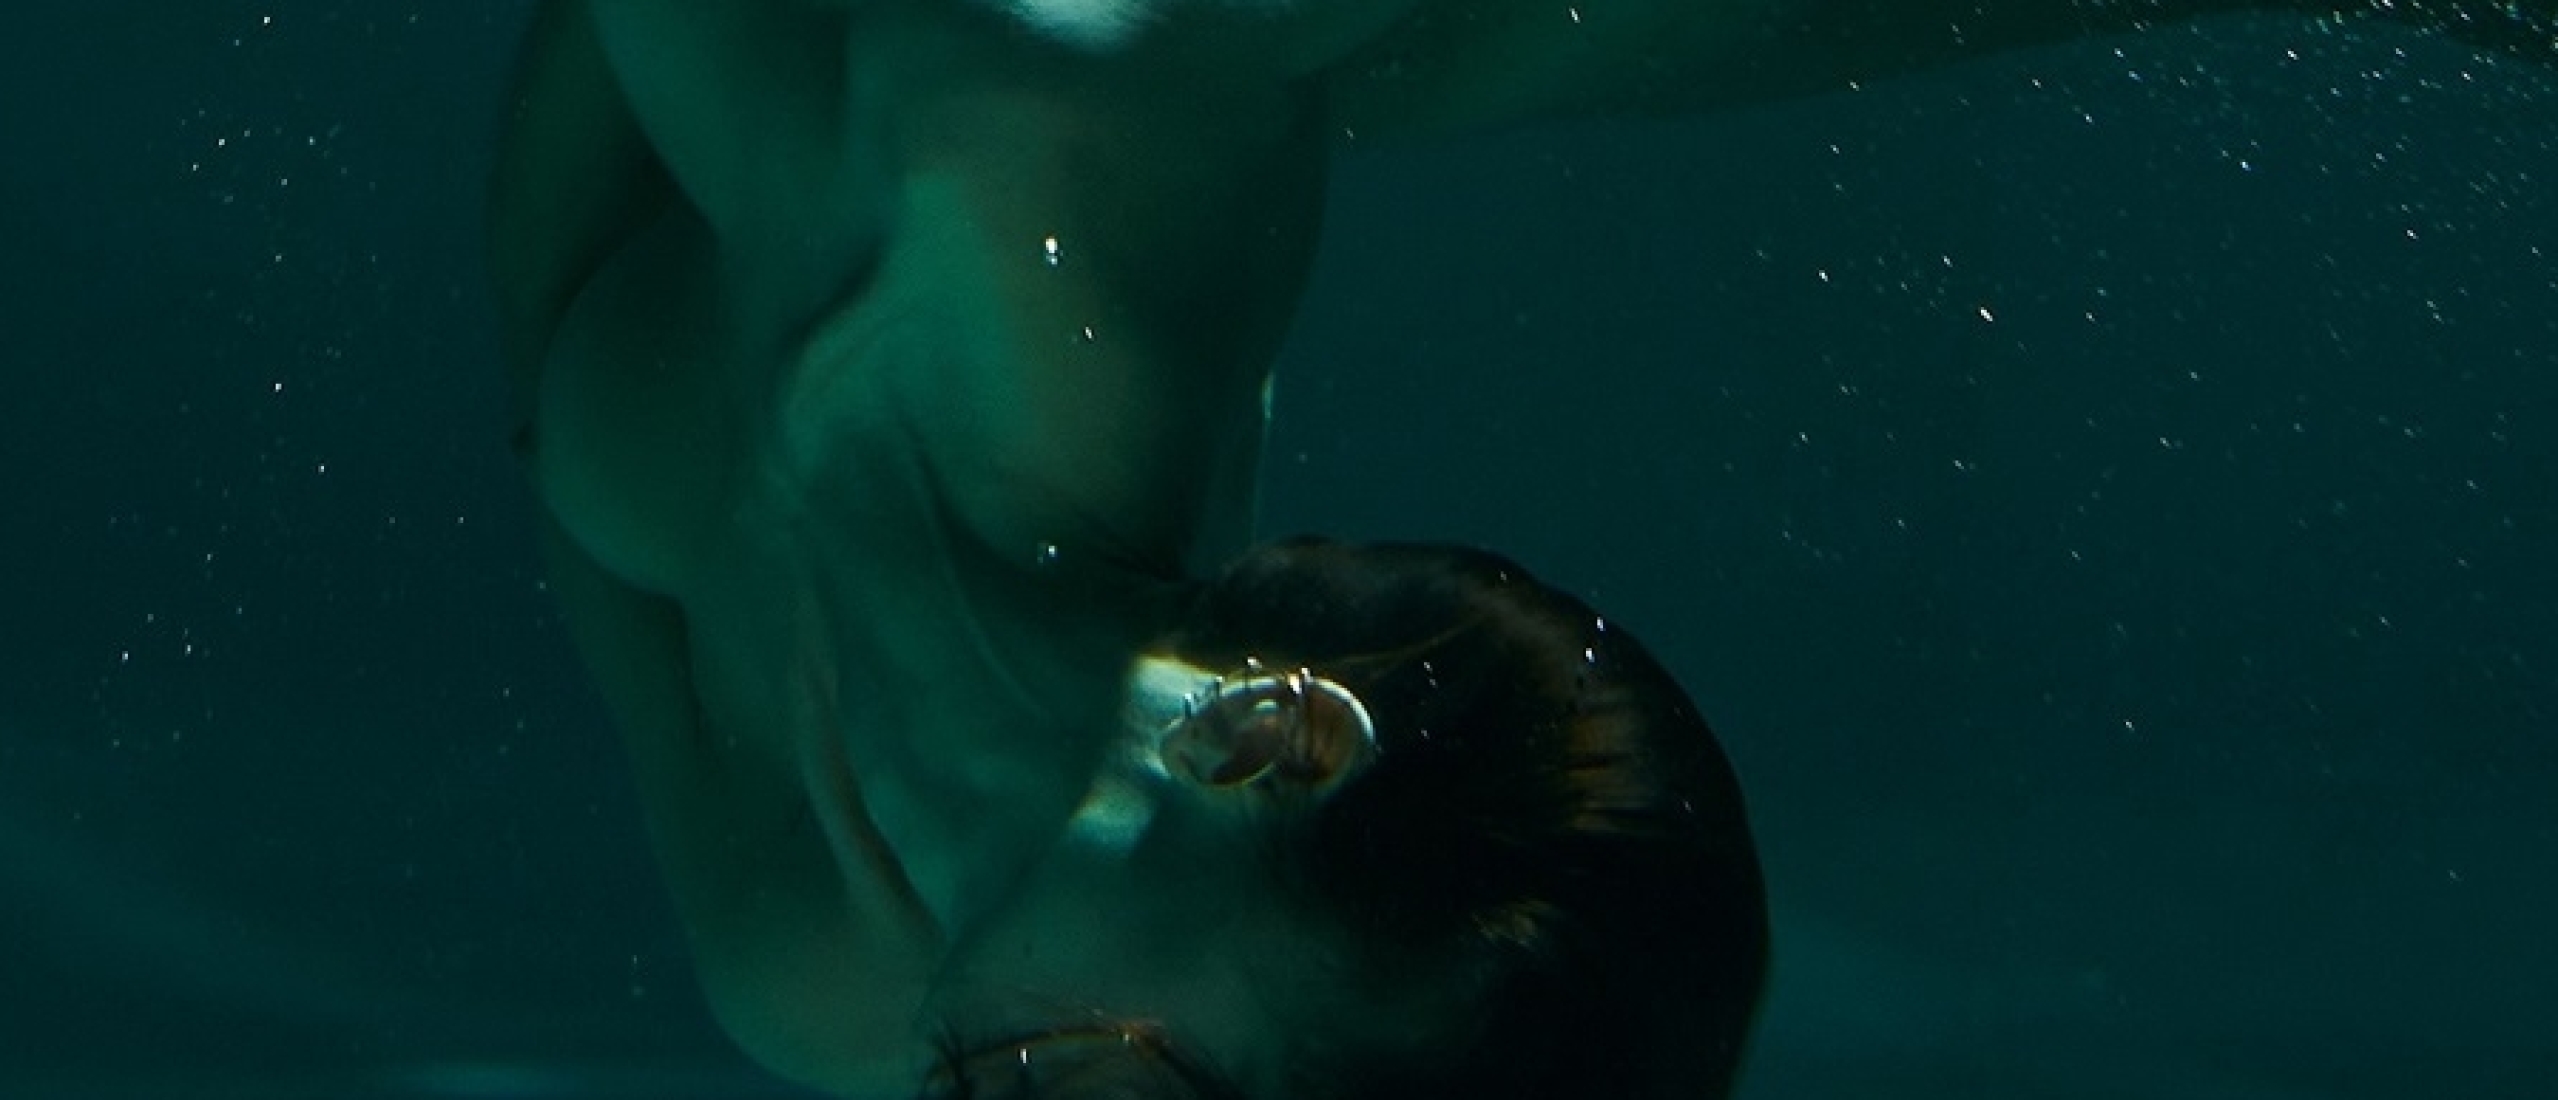 Pavlo Protsenko nude photo under water